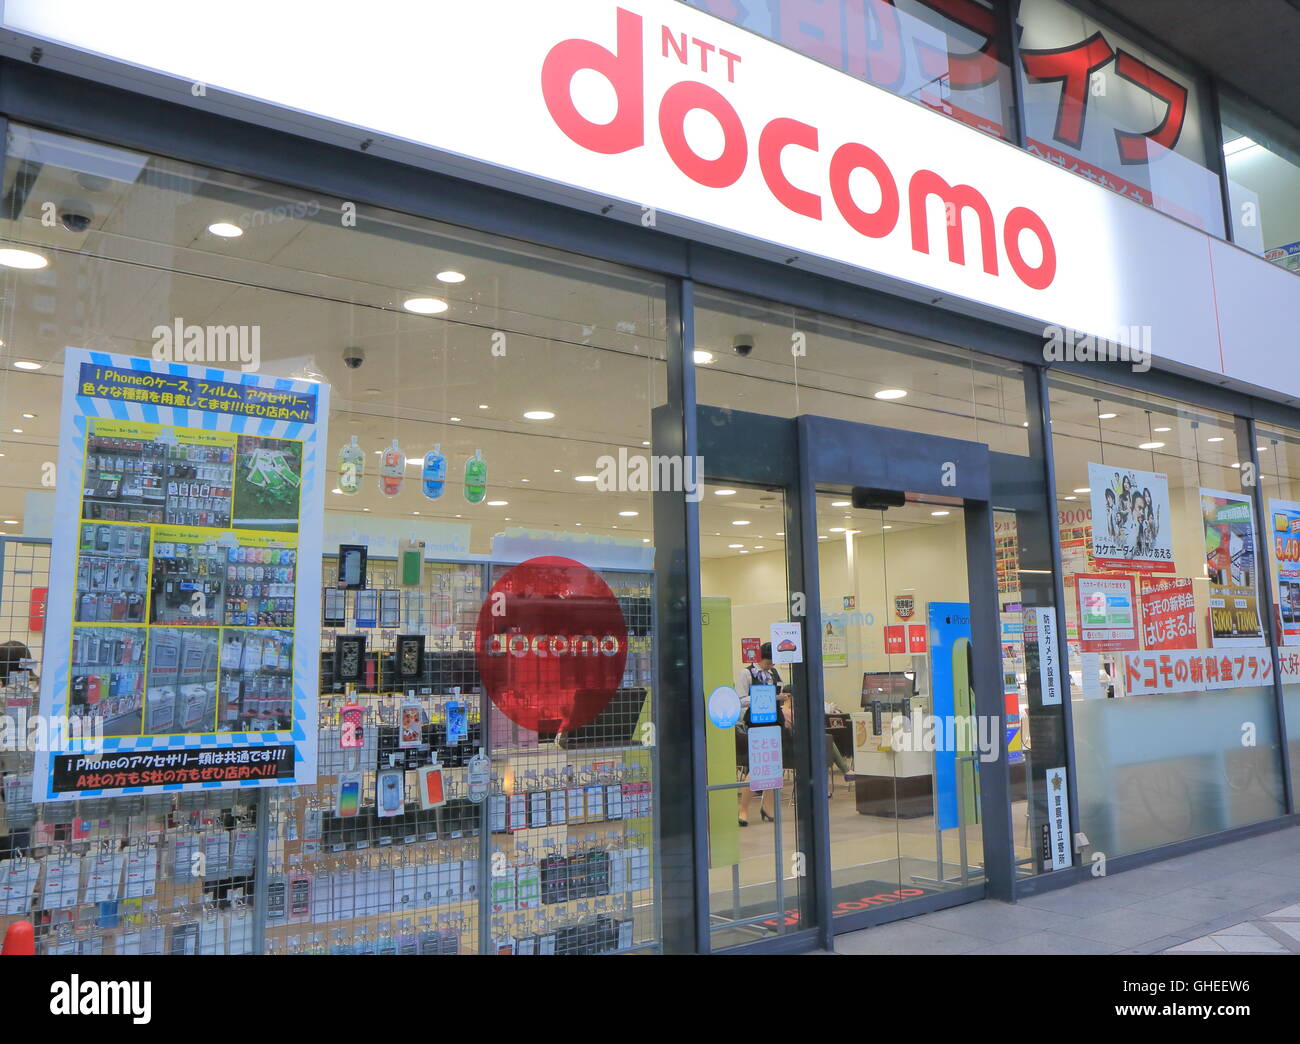 NTT Docomo shop in Kyoto Japan, the predominant mobile phone operator in Japan headquartered in Tokyo. Stock Photo